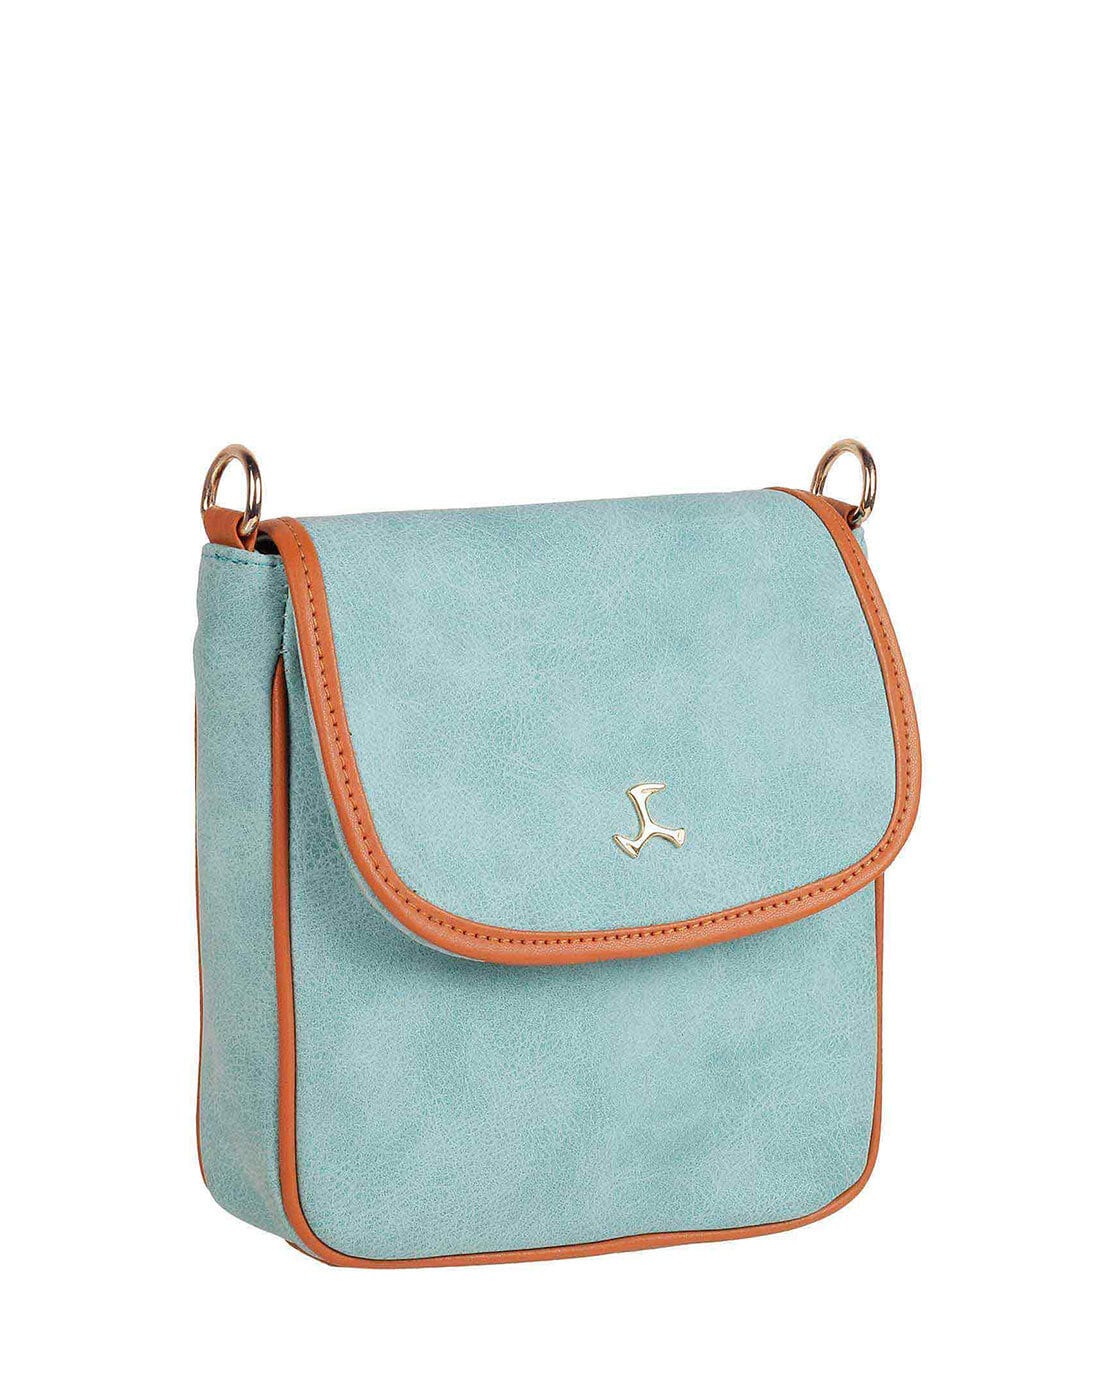 Buy Mochi Women Solid Light Blue Handbags Online